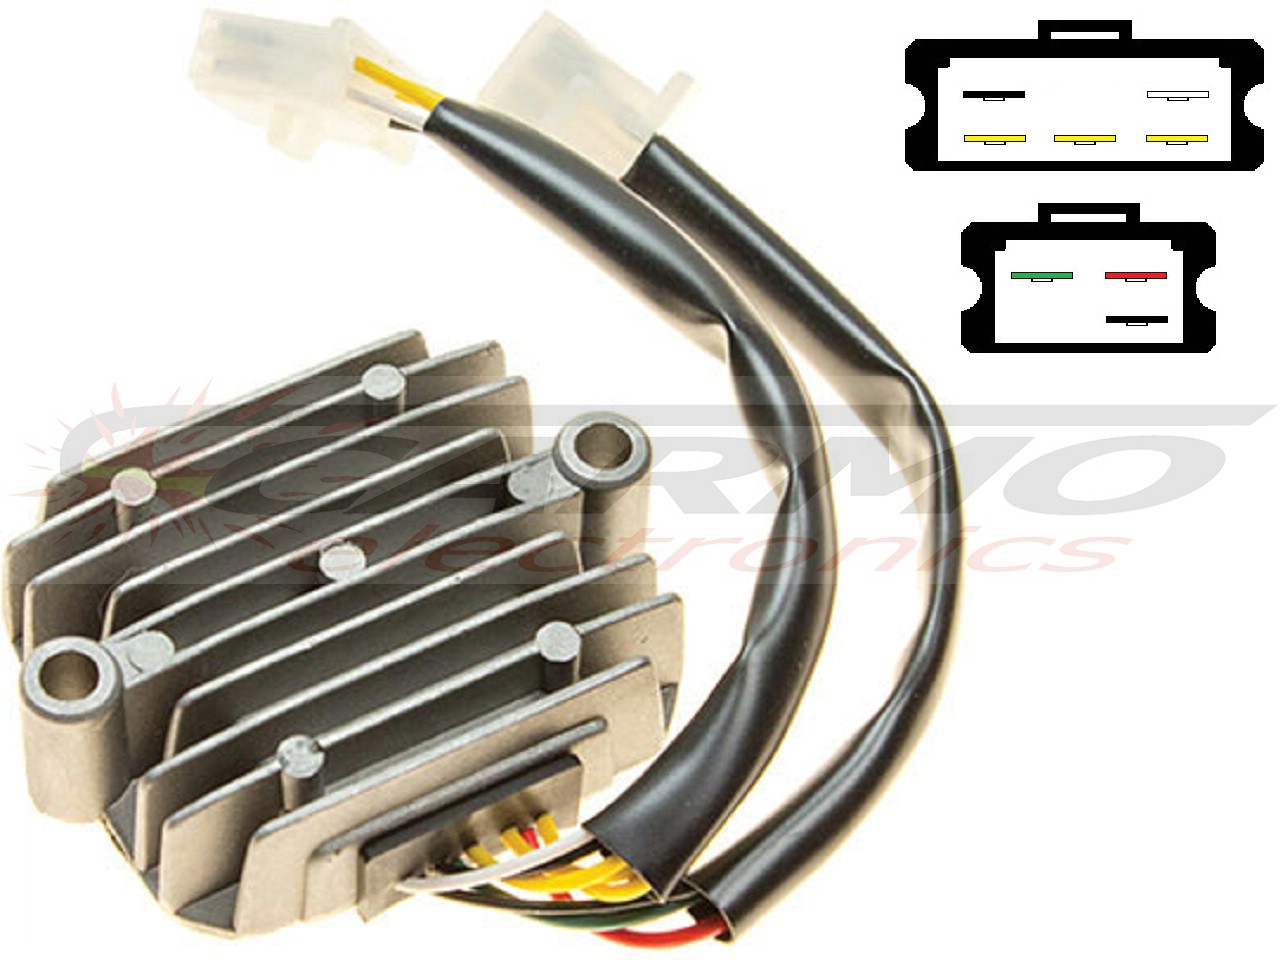 CARR191 - Honda CB CBX MOSFET Regulador de voltaje rectificador (SH236-12, SH236A-12, SH255A-12) - Haga click en la imagen para cerrar